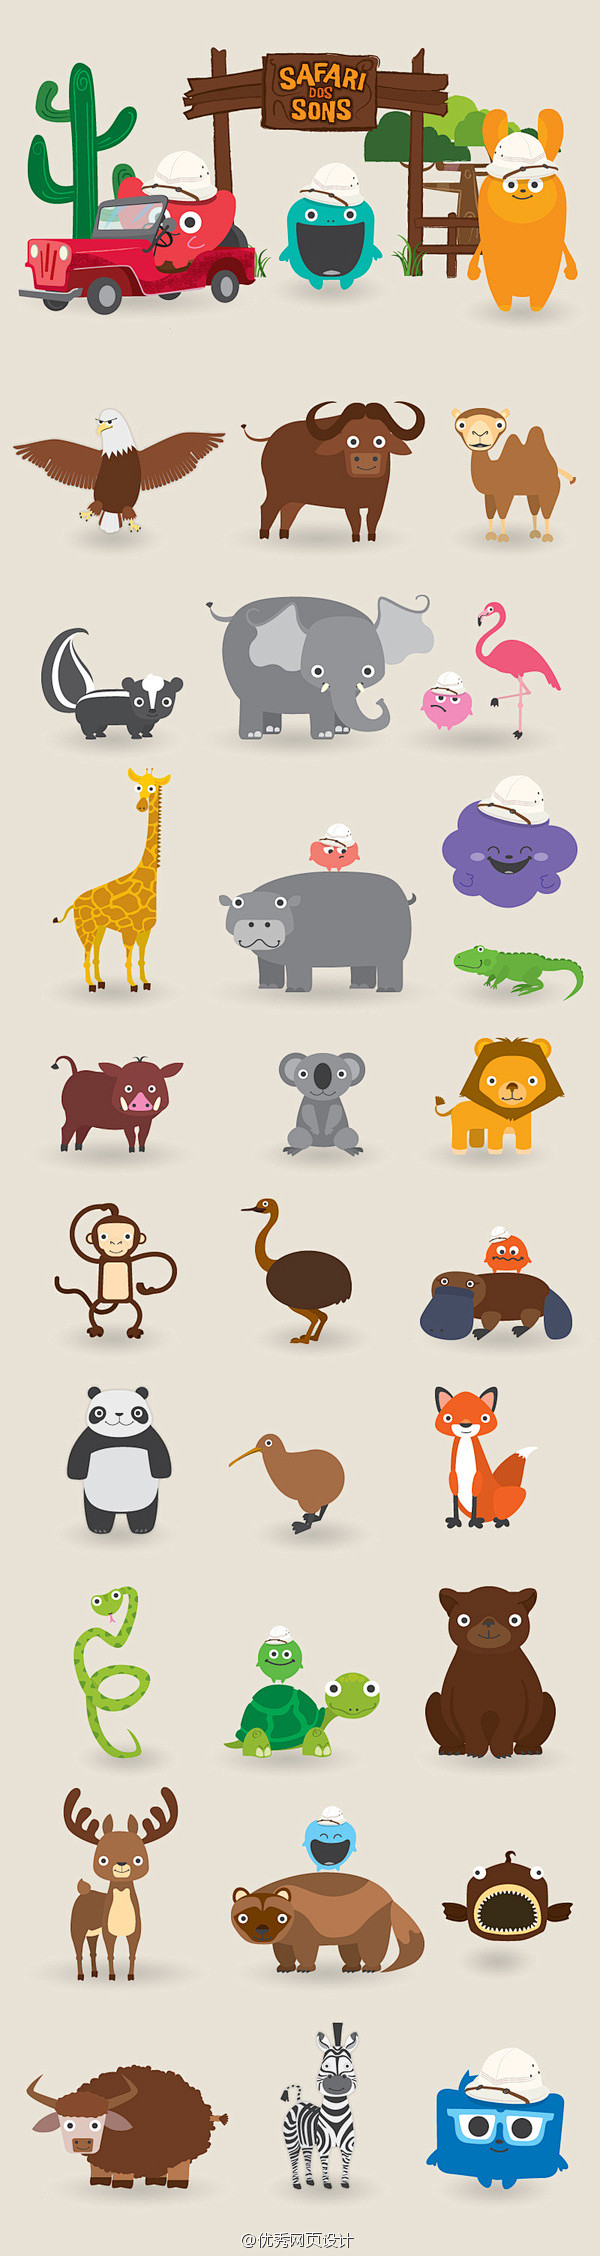 一组可爱的动物卡通形象.jpg (600...